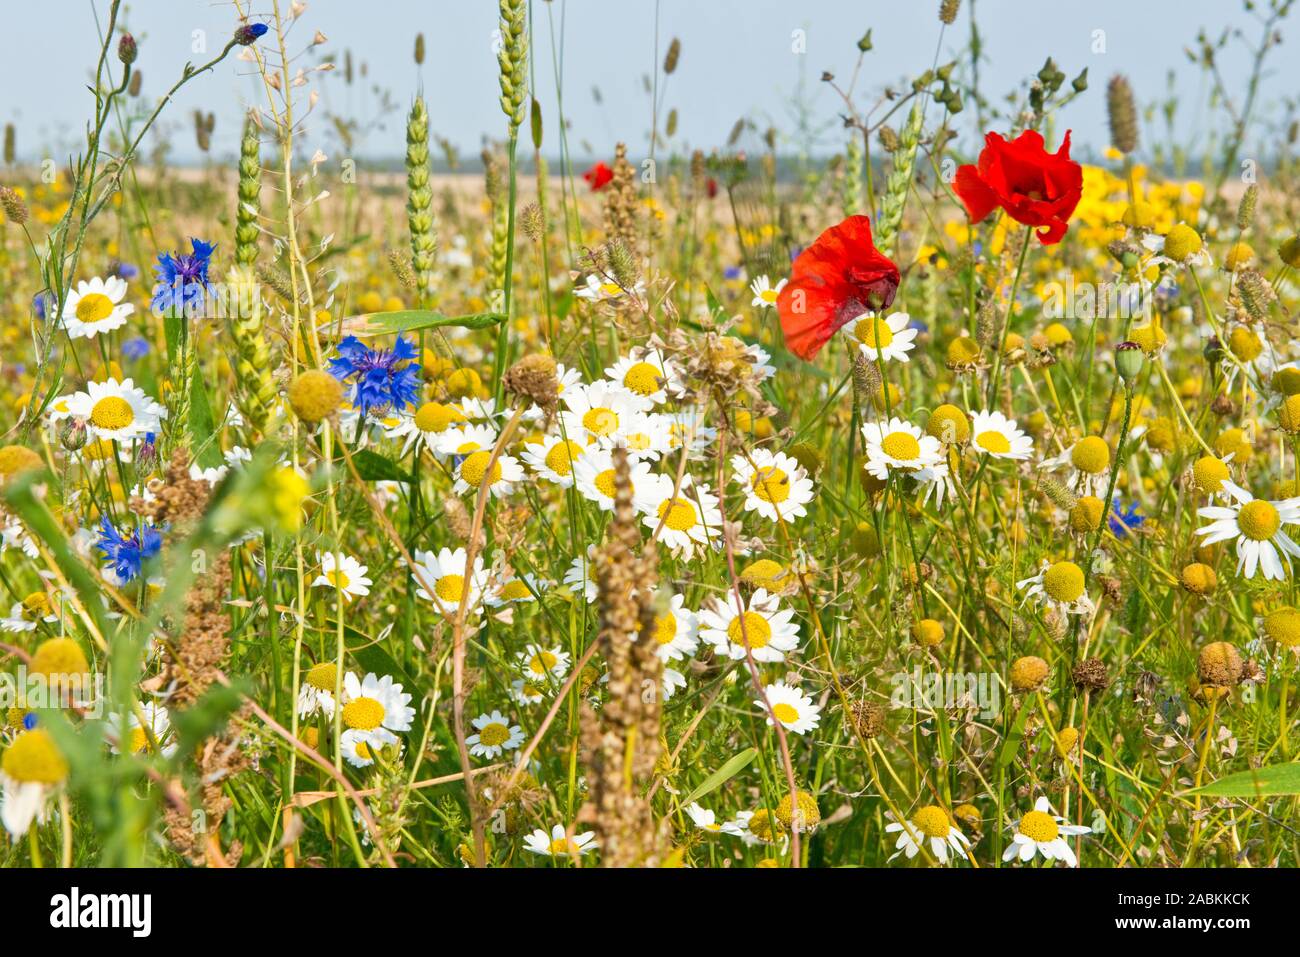 Wild flowers including field poppy growing along edge of wheat field, East Lothian, Scotland Stock Photo